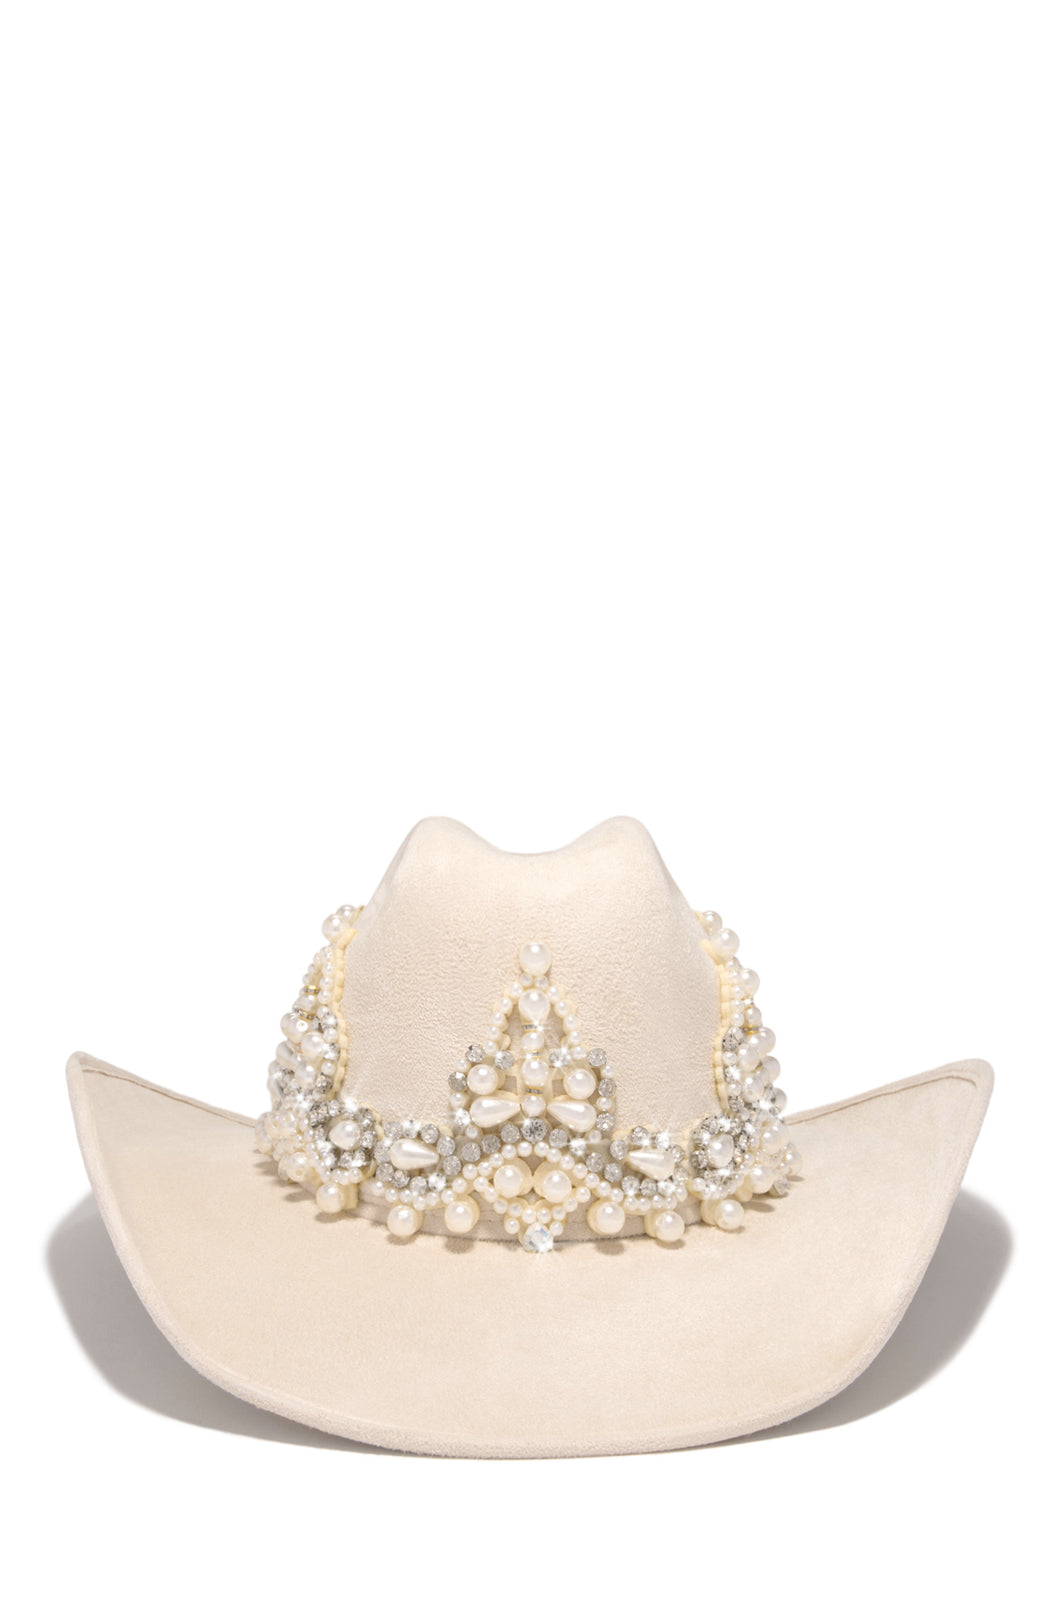 Selena Embellished Western Hat - Ivory